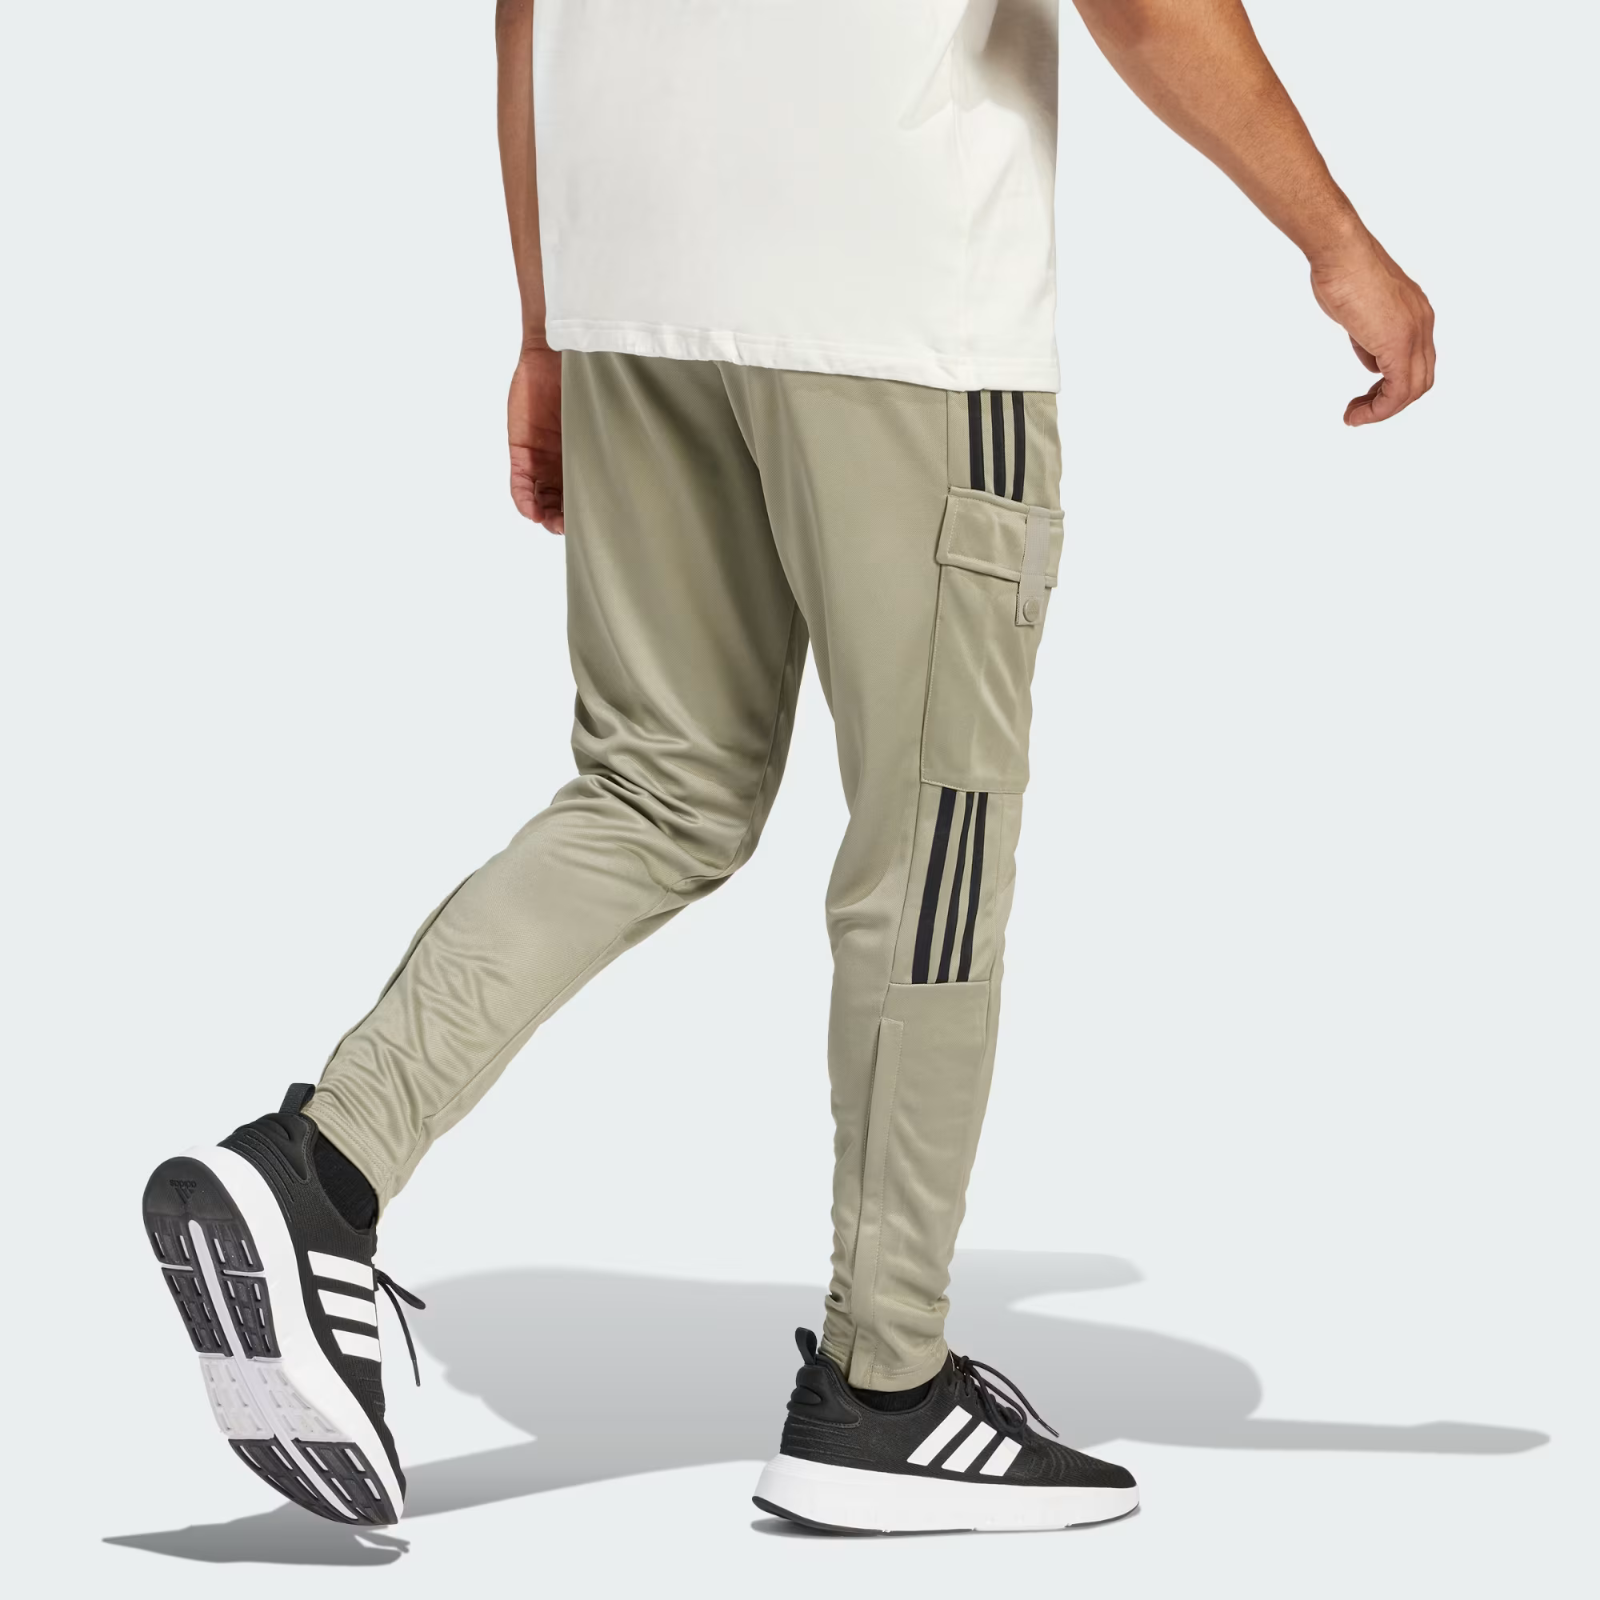 Adidas Uomo Tiro Cargo and Comfort 50 items Pantaloni similar